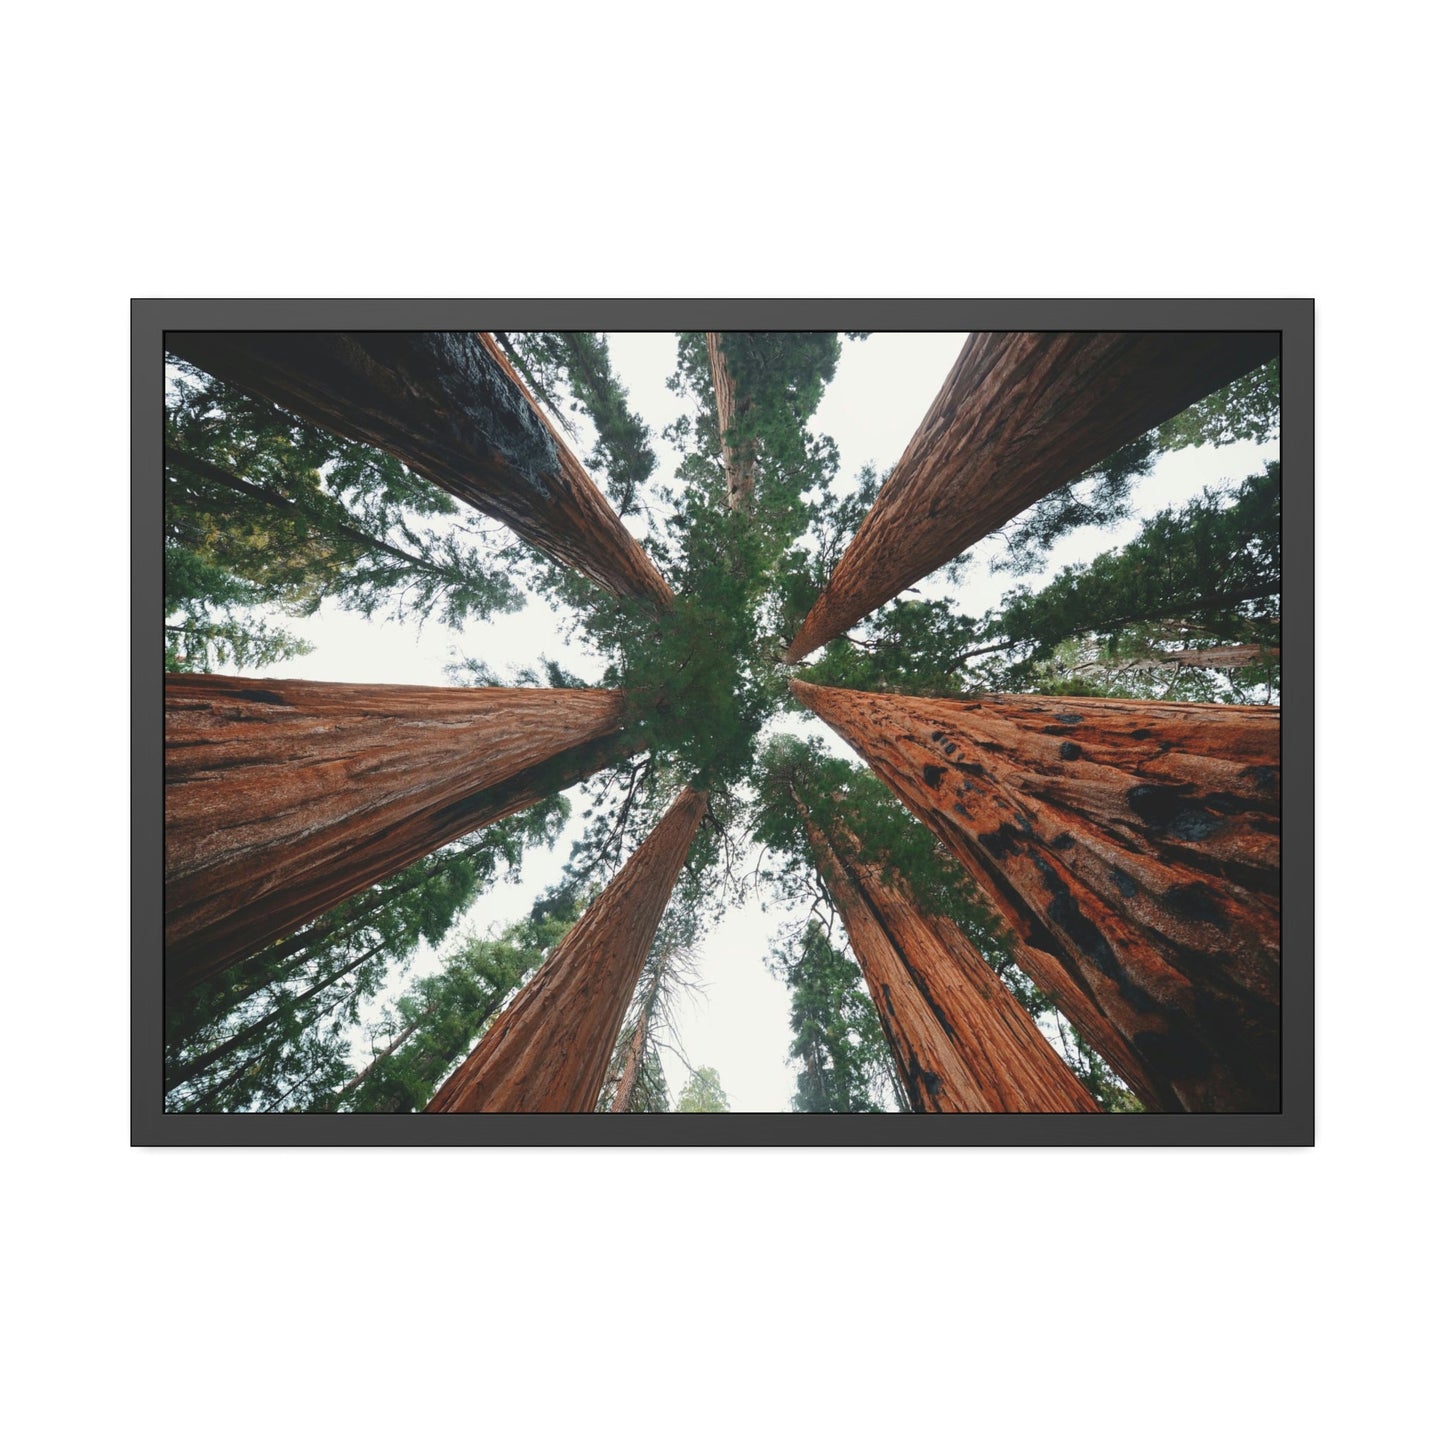 Majestic Giants: Redwood Trees